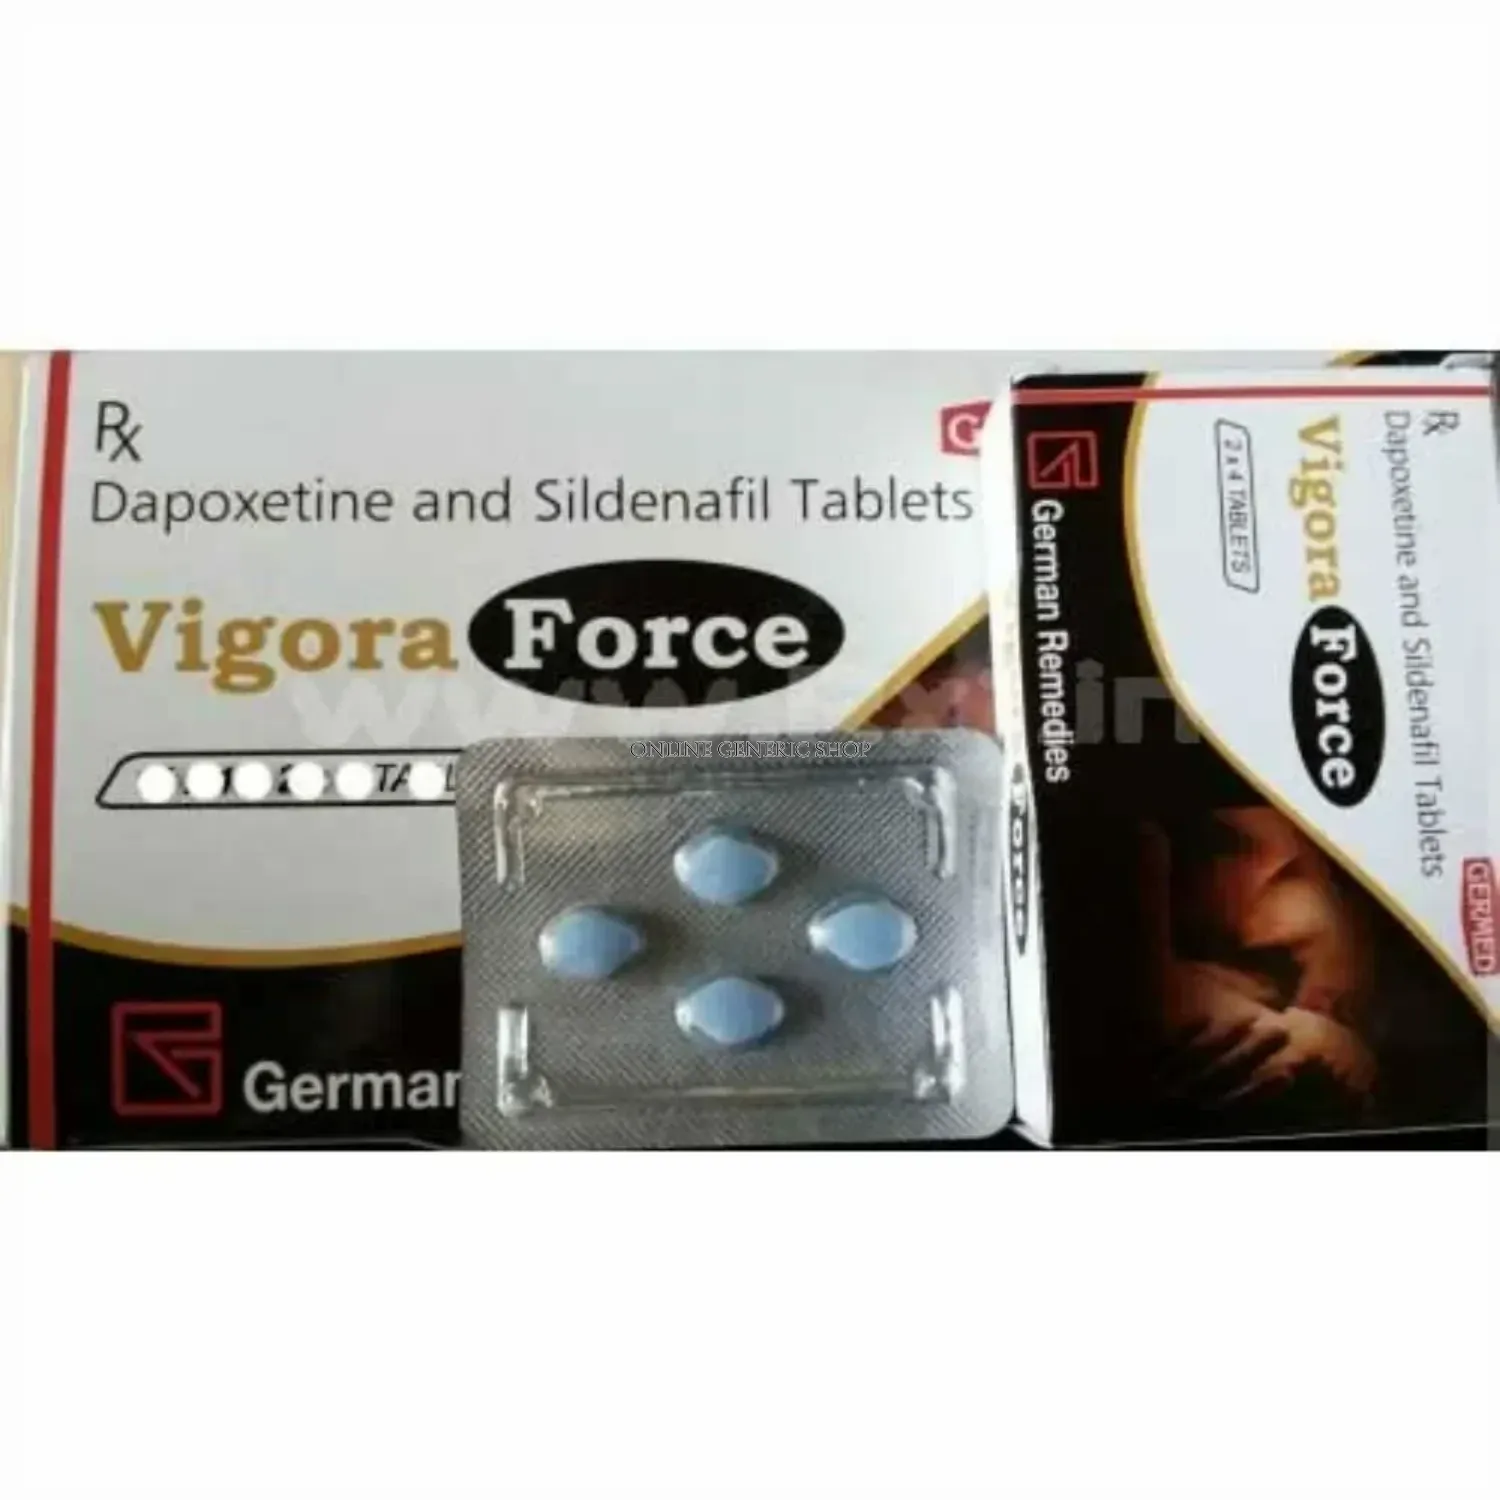 Vigora - Force 50 mg image